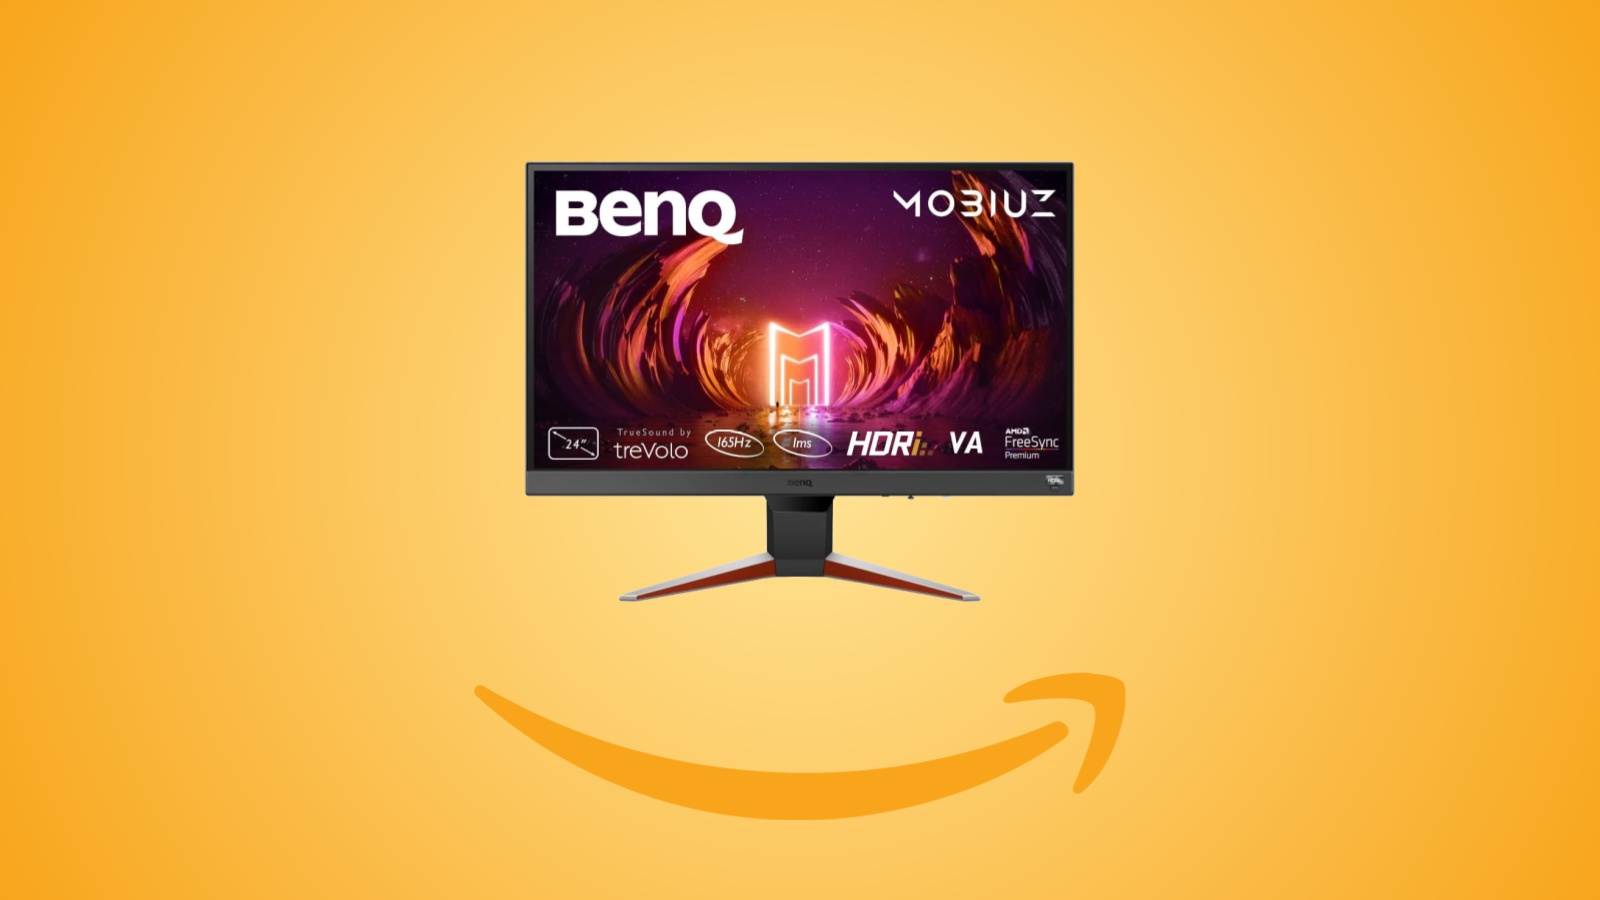 Offerte Amazon: monitor BenQ Mobiuz da 24 pollici a 165 Hz in sconto al prezzo minimo storico